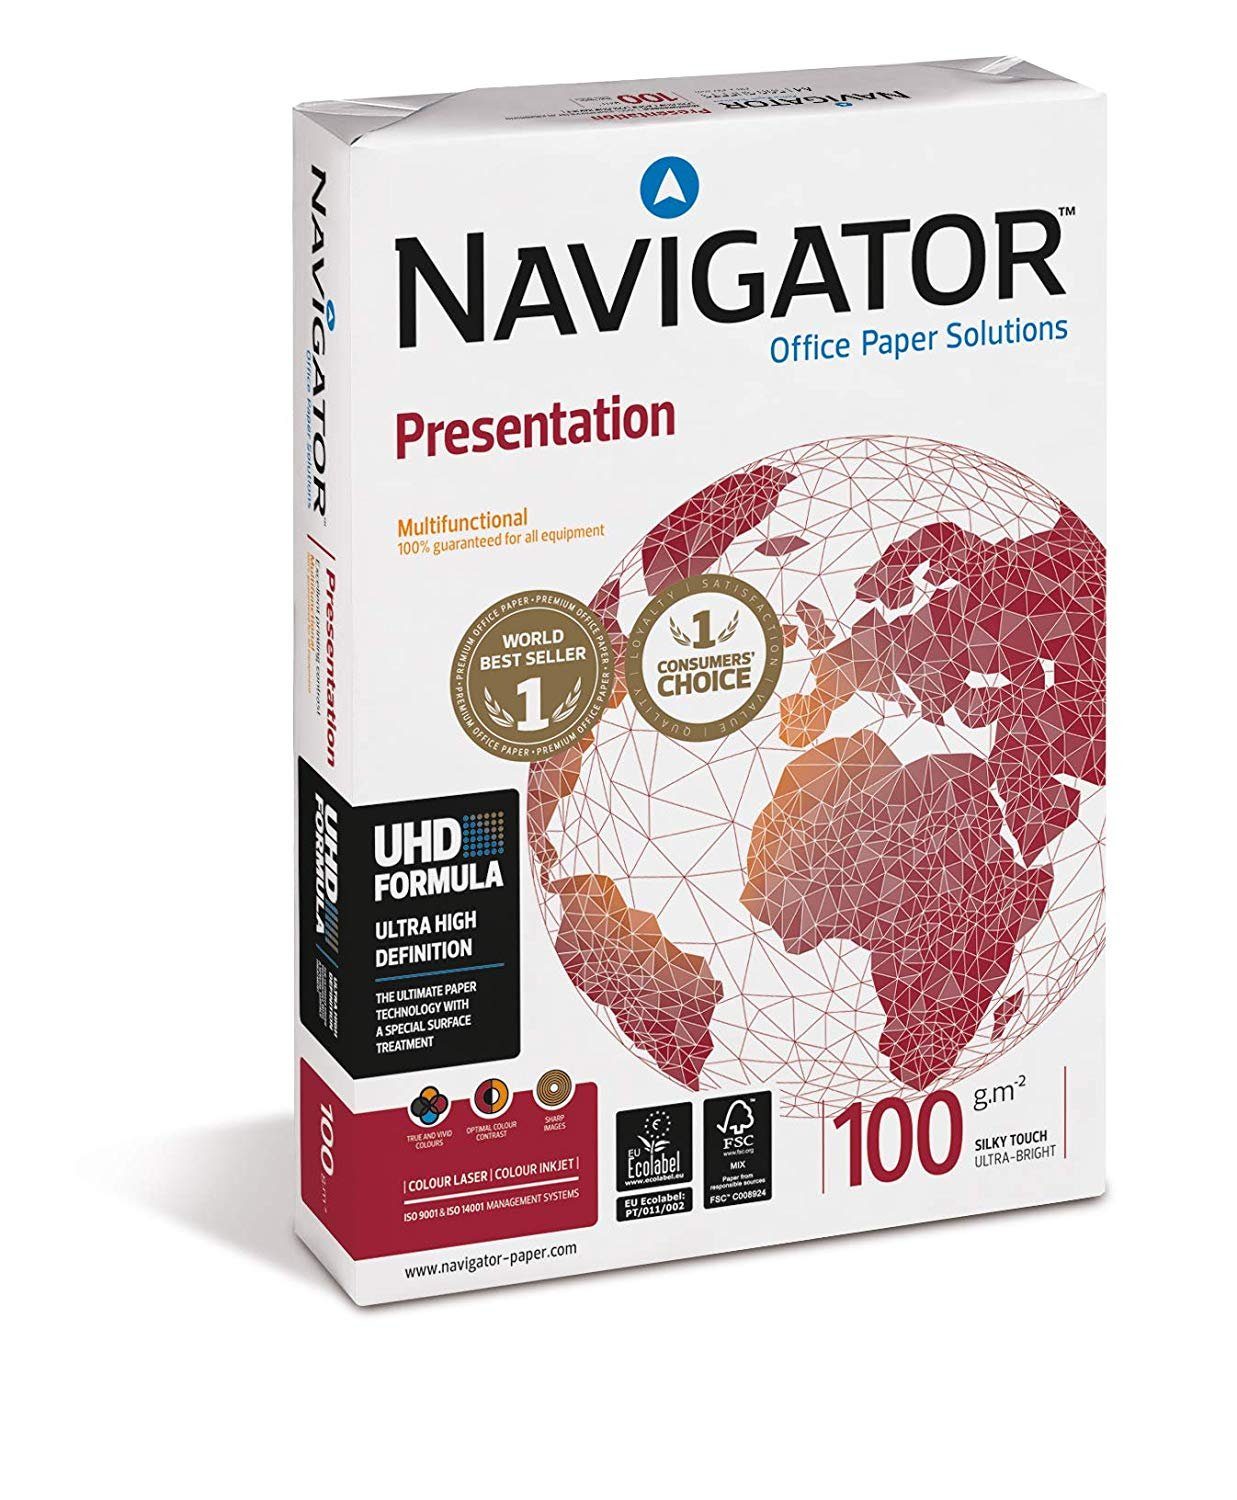 Kopierpapier NAVIGATOR 100g/m² - Blatt Navigator 2500 DIN-A4 weiß Drucker- und Presentation